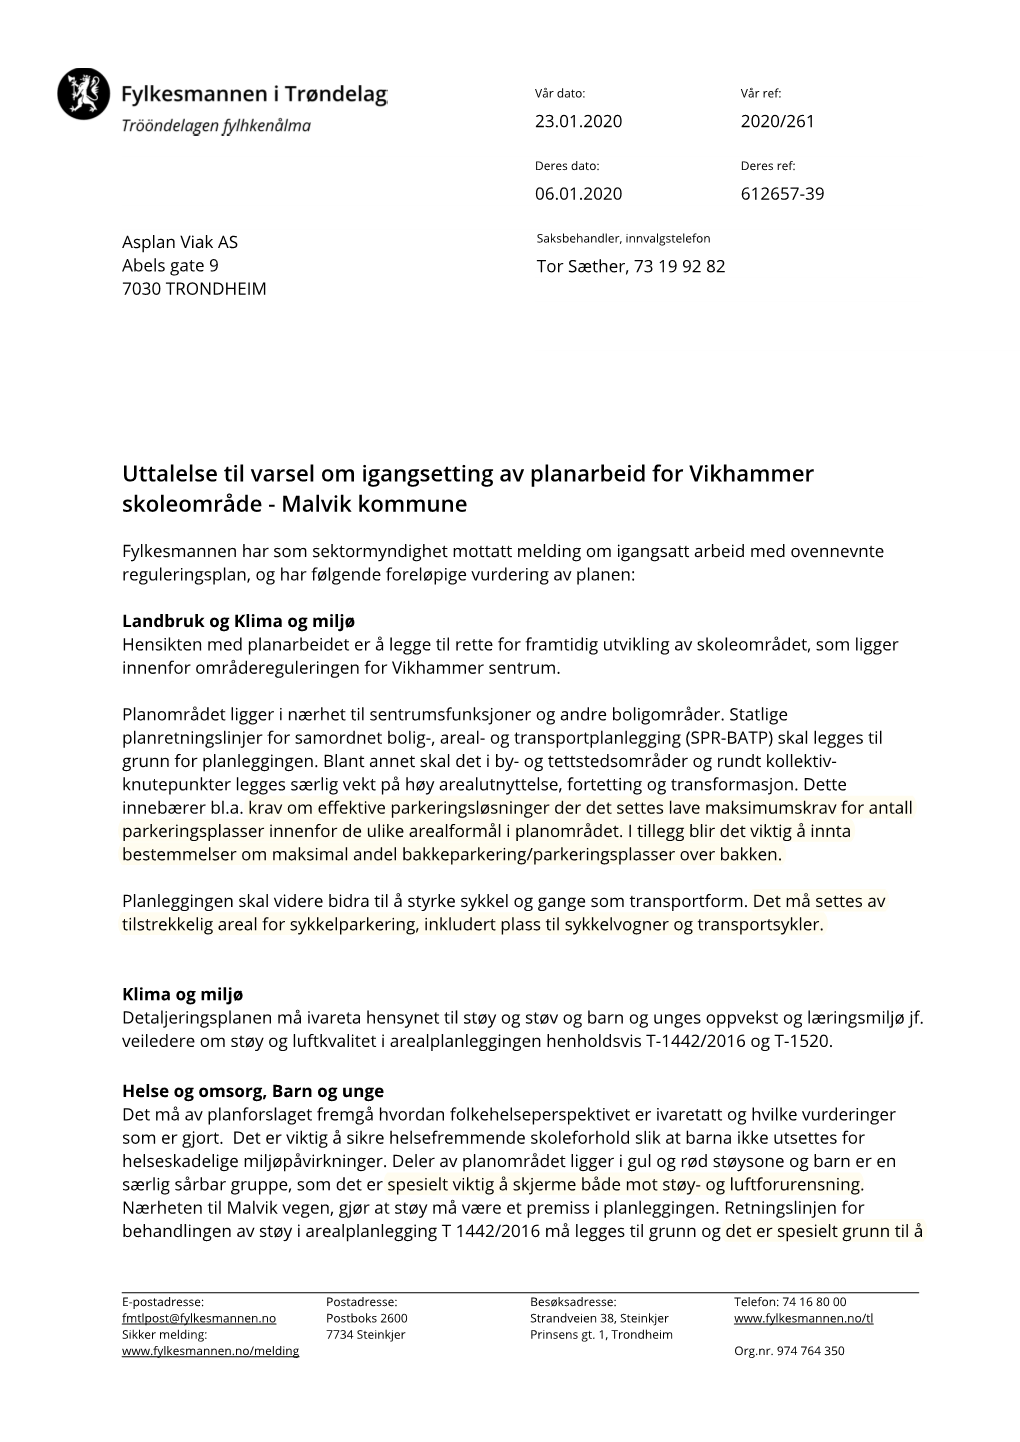 Uttalelse Til Varsel Om Igangsetting Av Planarbeid for Vikhammer Skoleområde - Malvik Kommune